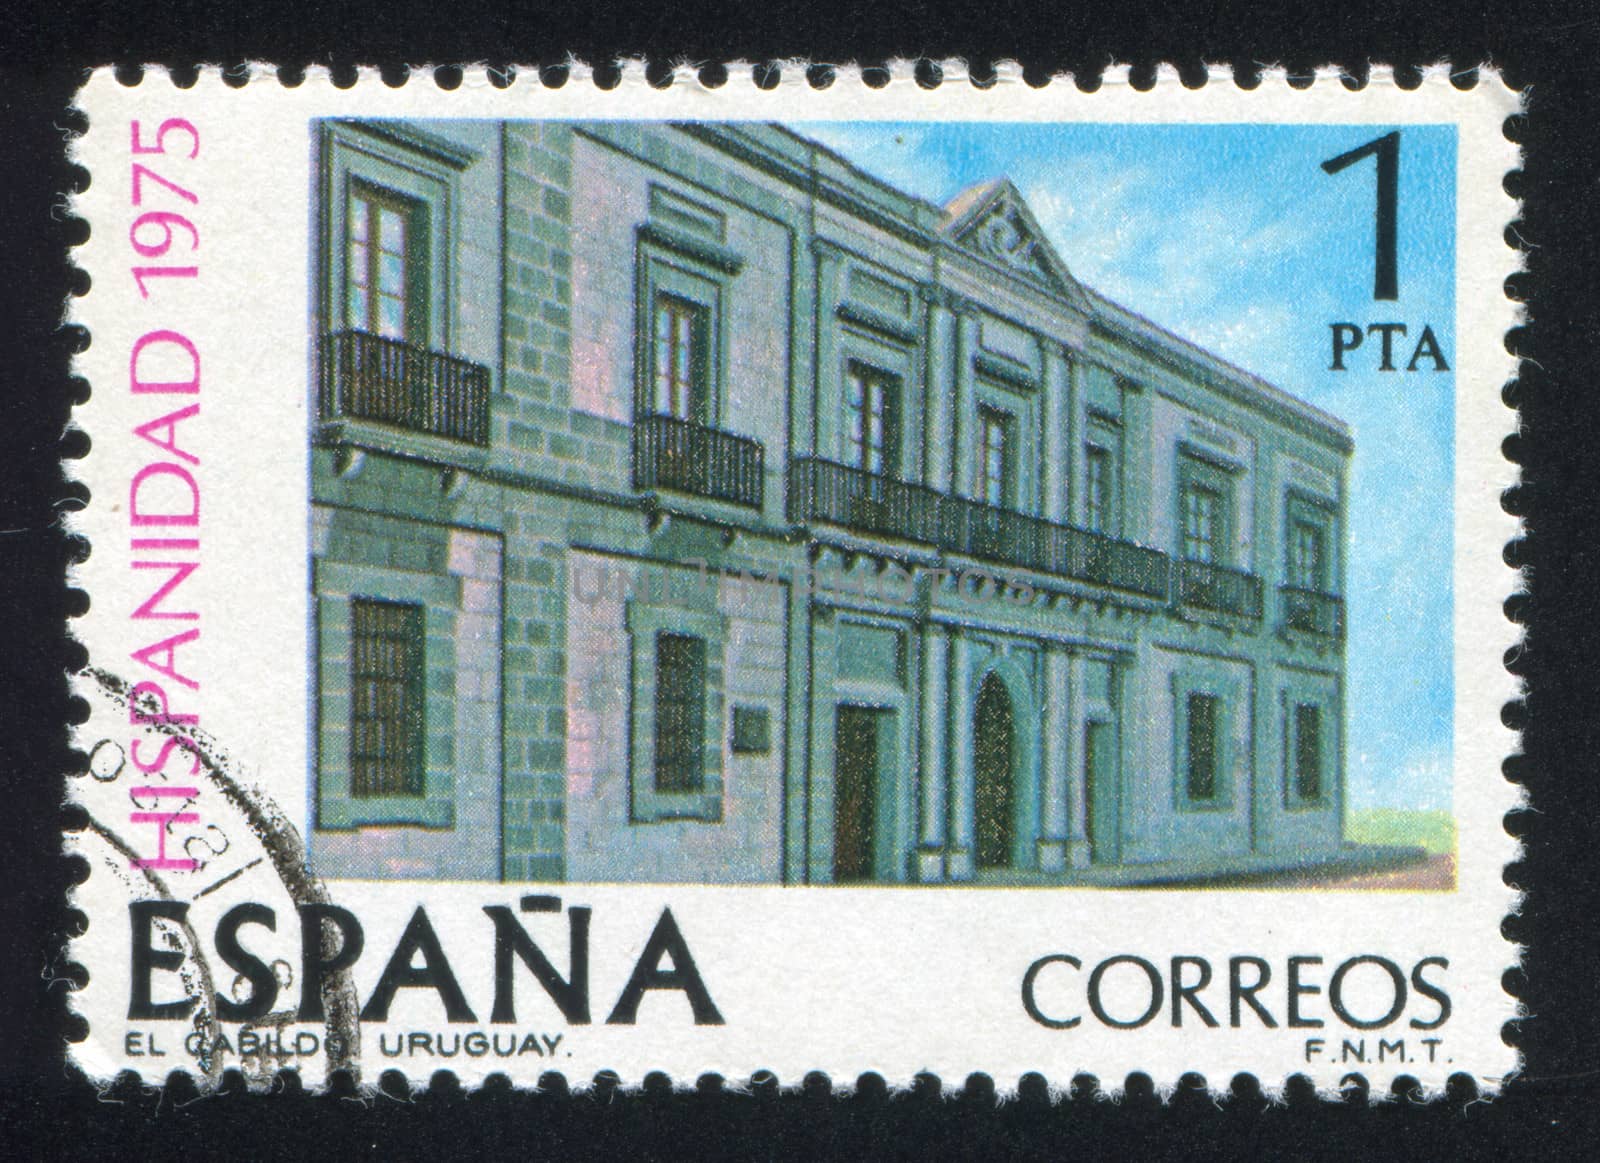 SPAIN - CIRCA 1975: stamp printed by Spain, shows Hotel El Cabildo in Uruguay, Paradores, circa 1975